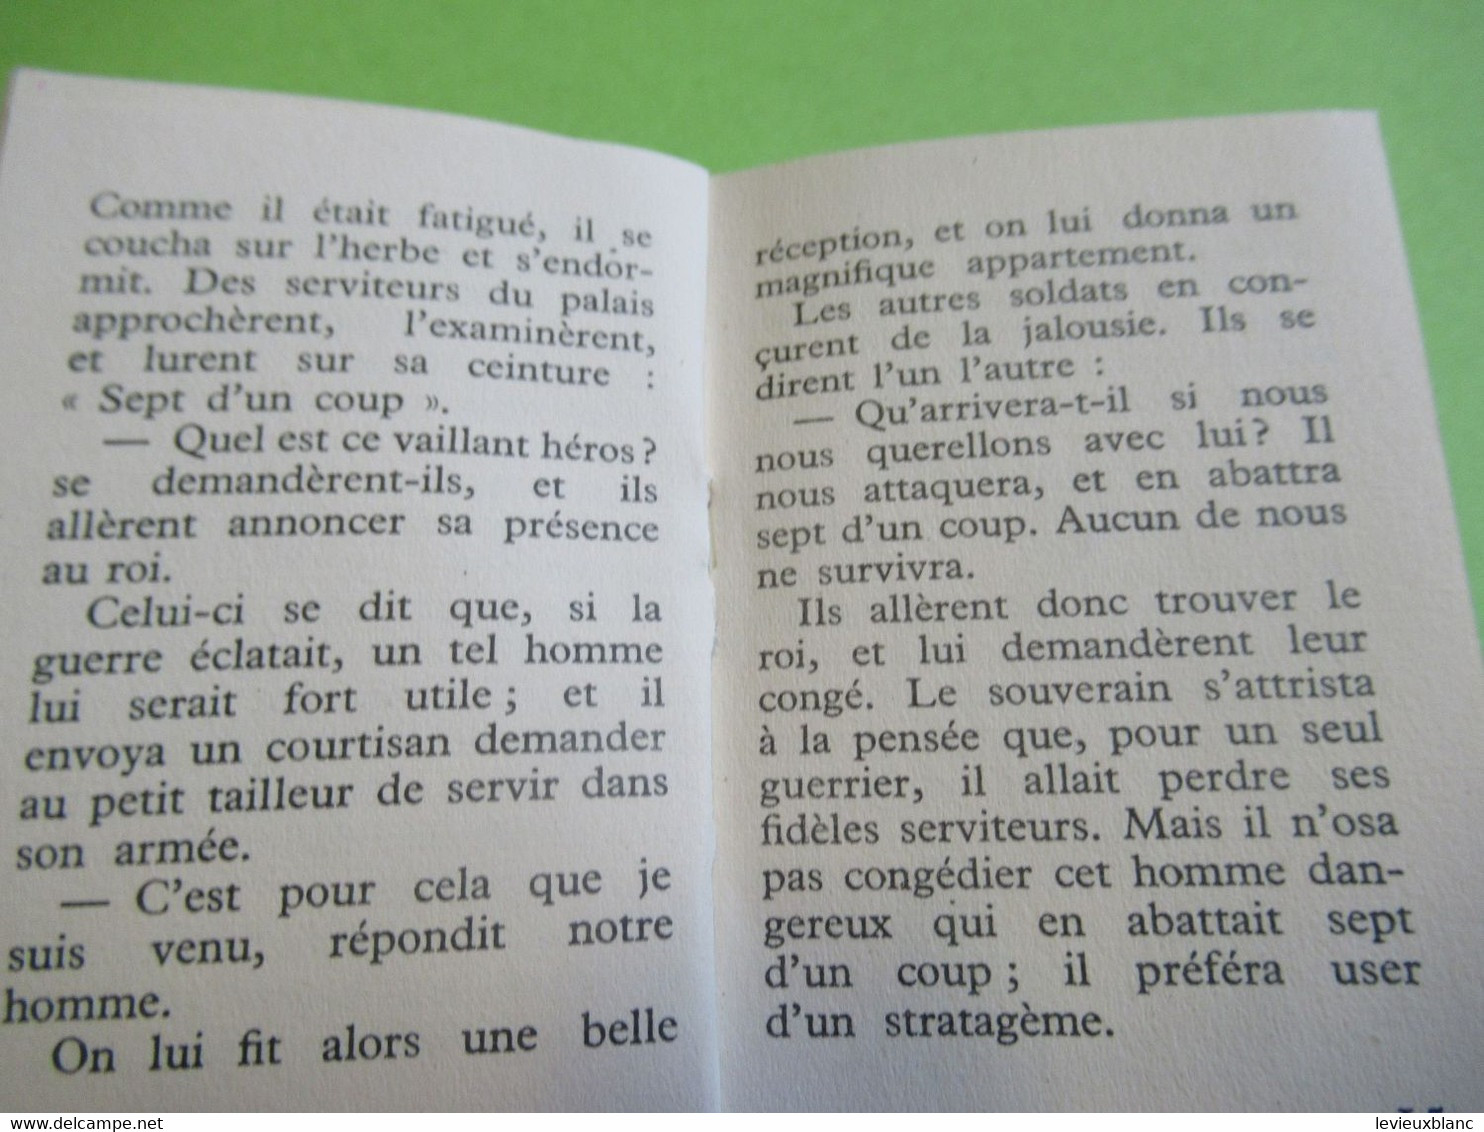 Livret De 24 Pages / LE VAILLANT PETIT TAILLEUR / Conte De GRIMM/ Presses De La Cité/1954           BD169 - Autres & Non Classés